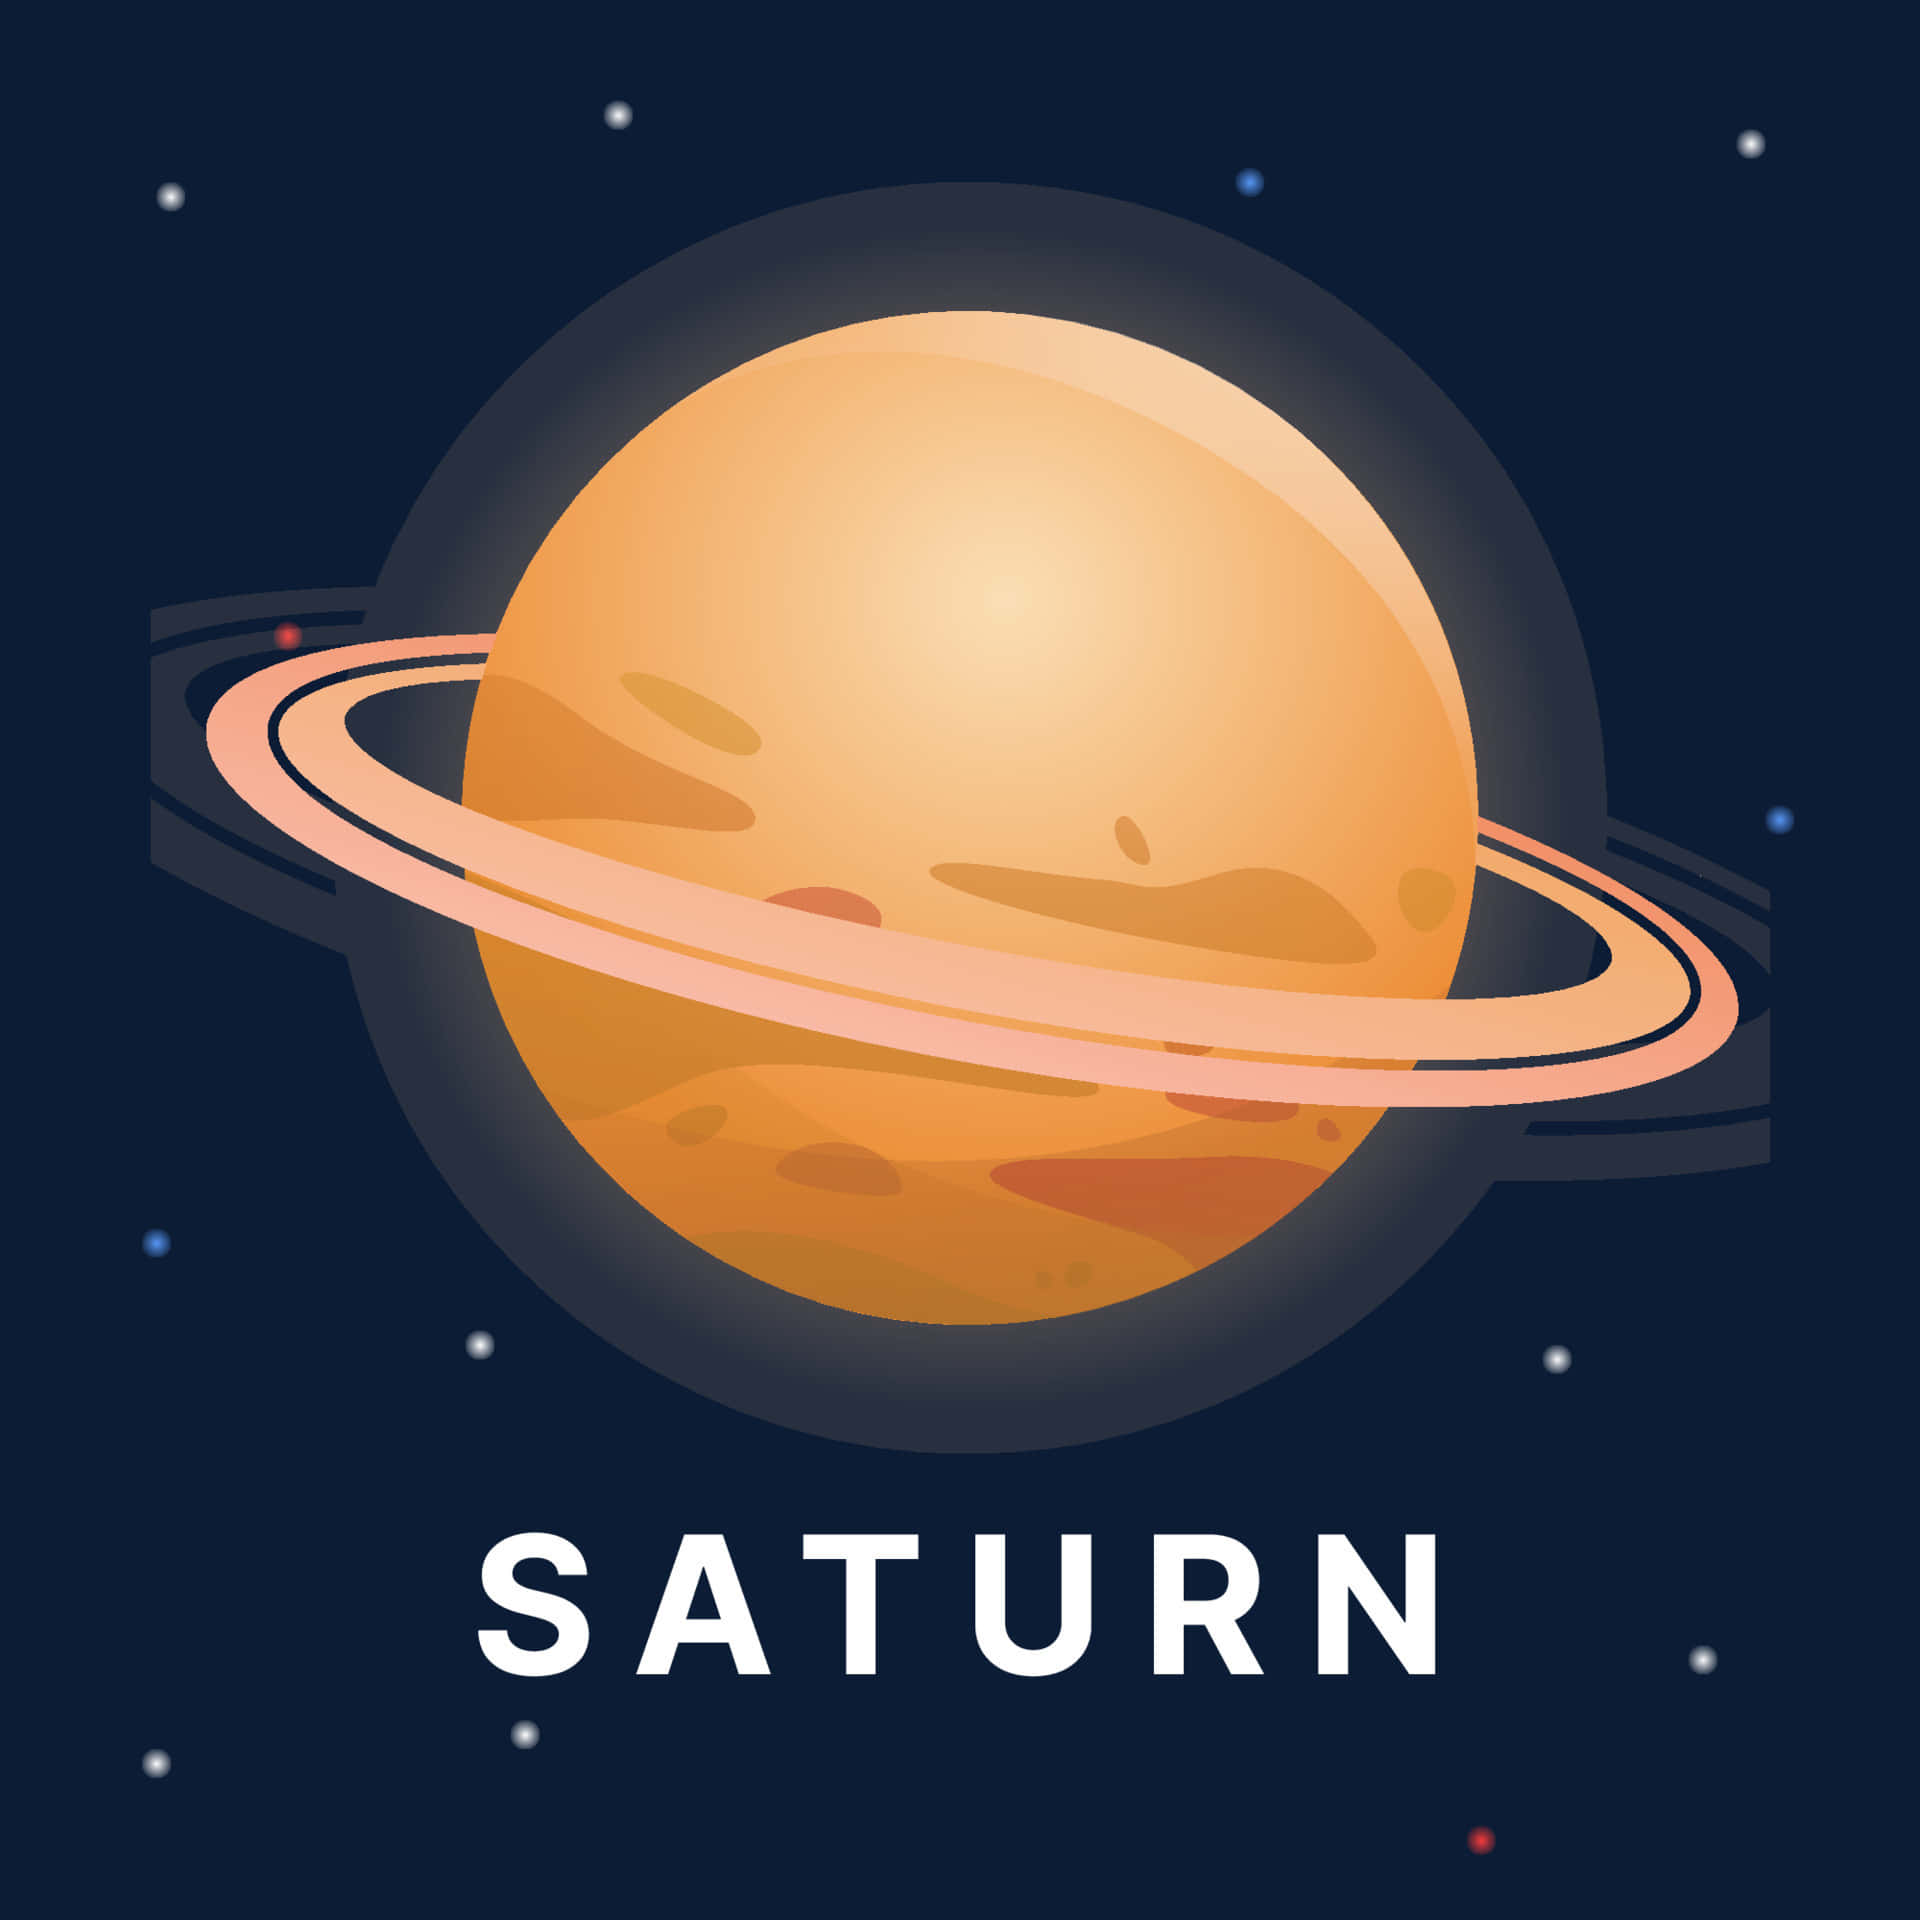 Saturnsfarvestrålende Og Storslåede Ring-systems Skønhed.